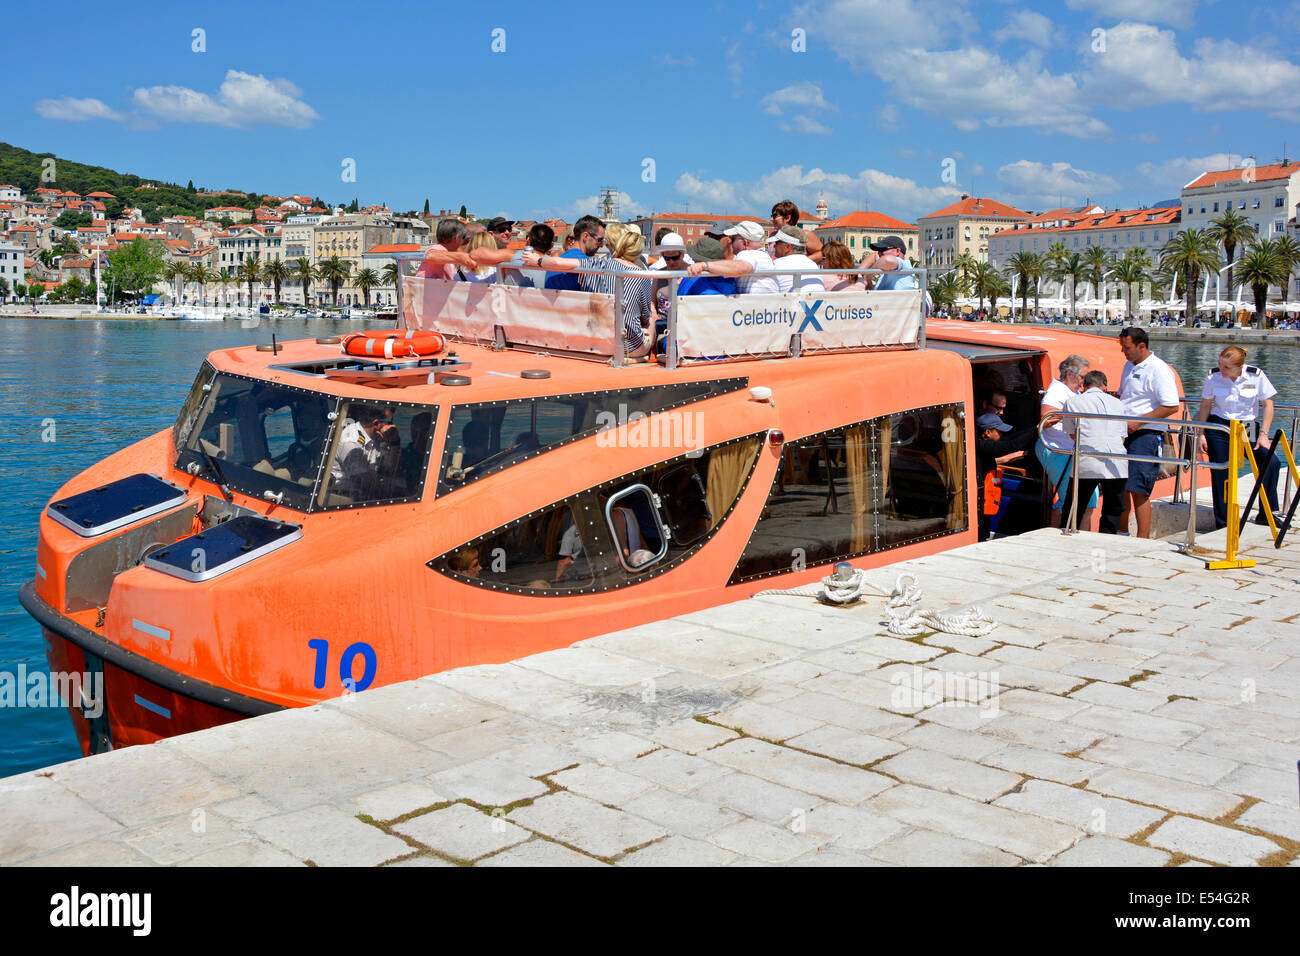 Touristes hors Celebrity Cruises bateau de croisière arrivant dans les navires bateau de sauvetage tendre à Split port jetée & front de mer Croatie Dalmatie Mer Adriatique Europe Banque D'Images